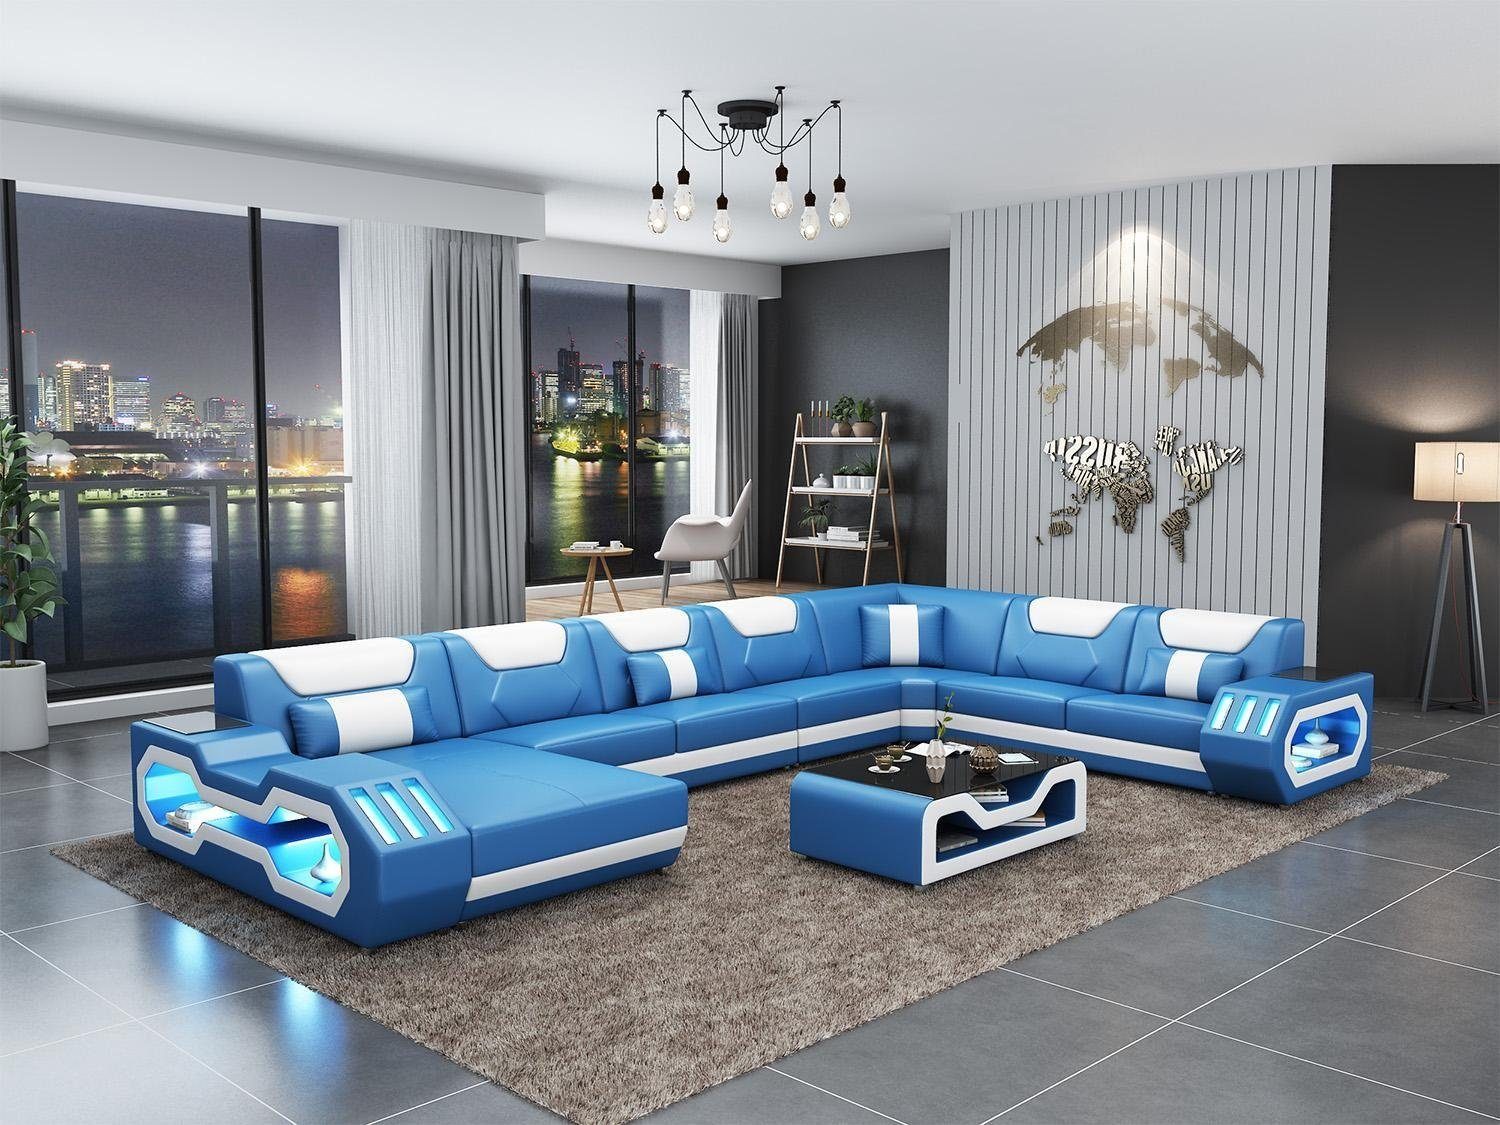 JVmoebel Wohnzimmer-Set, Wohnlandschaft U Form Ecksofa Couchtisch Sideboard Design Blau/Weiß